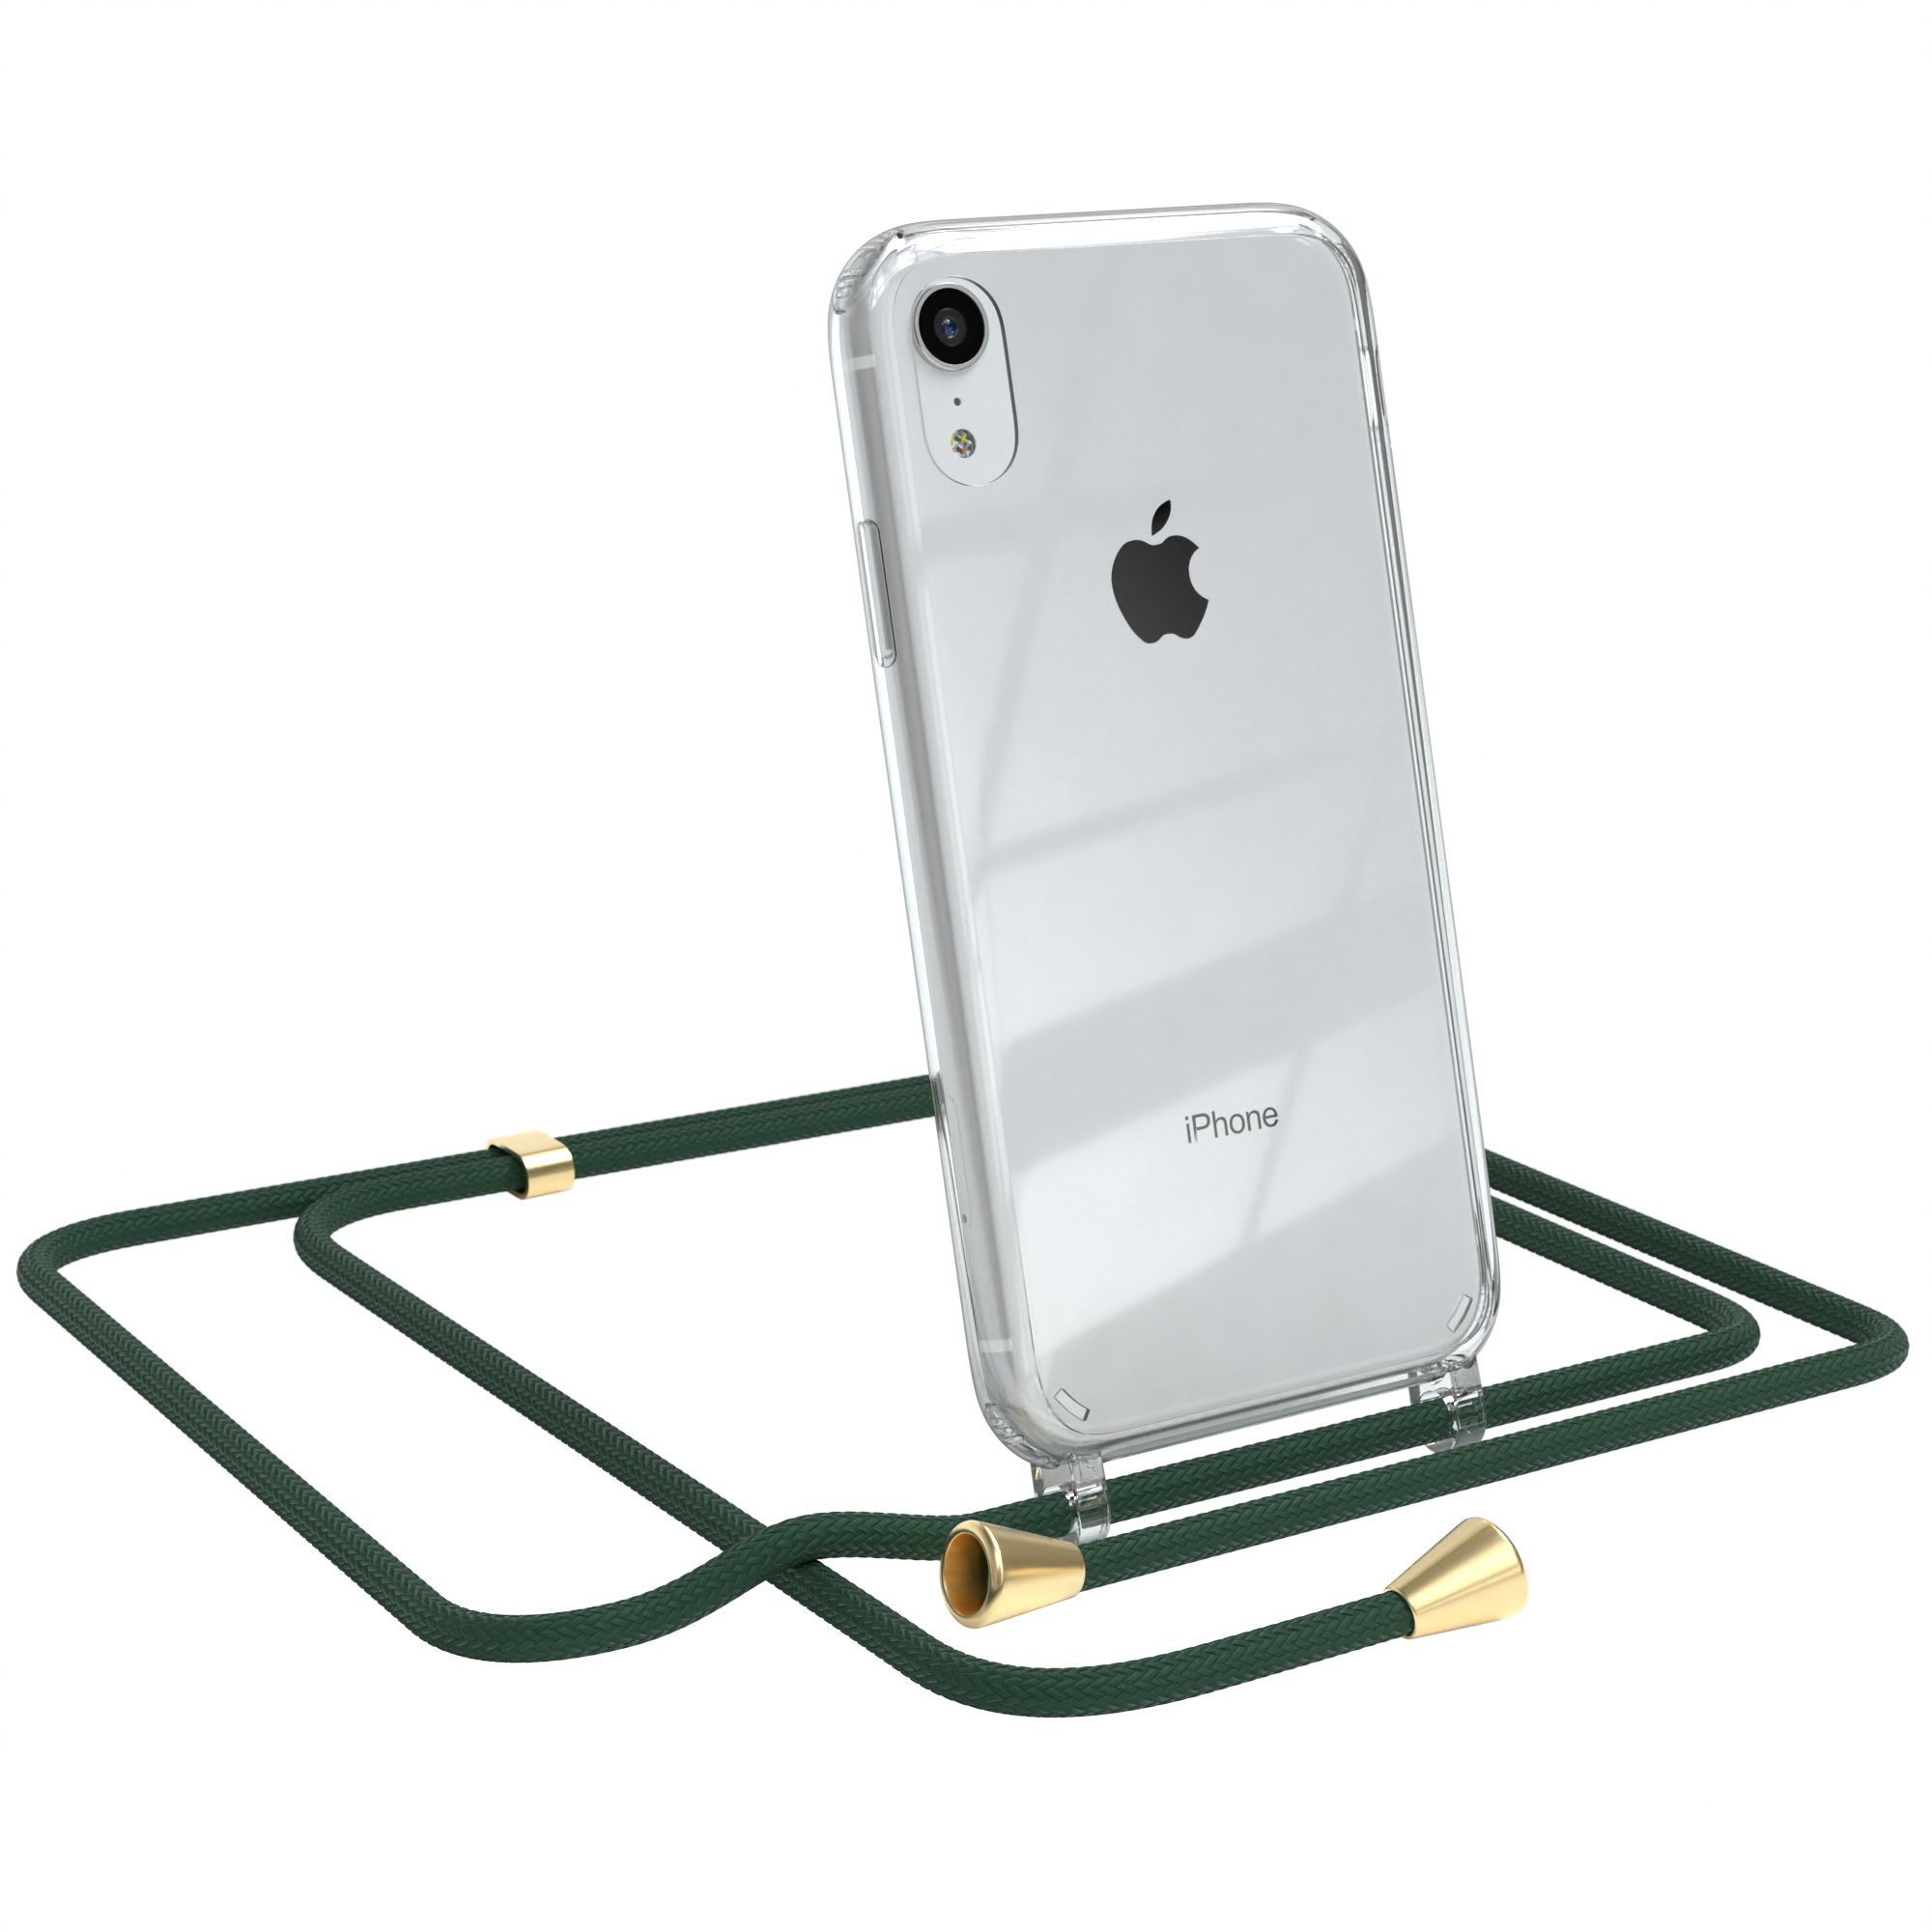 EAZY CASE Handykette Hülle mit Kette für Apple iPhone XR 6,1 Zoll, Kettenhülle zum Umhängen Tasche Handykordel Slimcover Grün Clips Gold